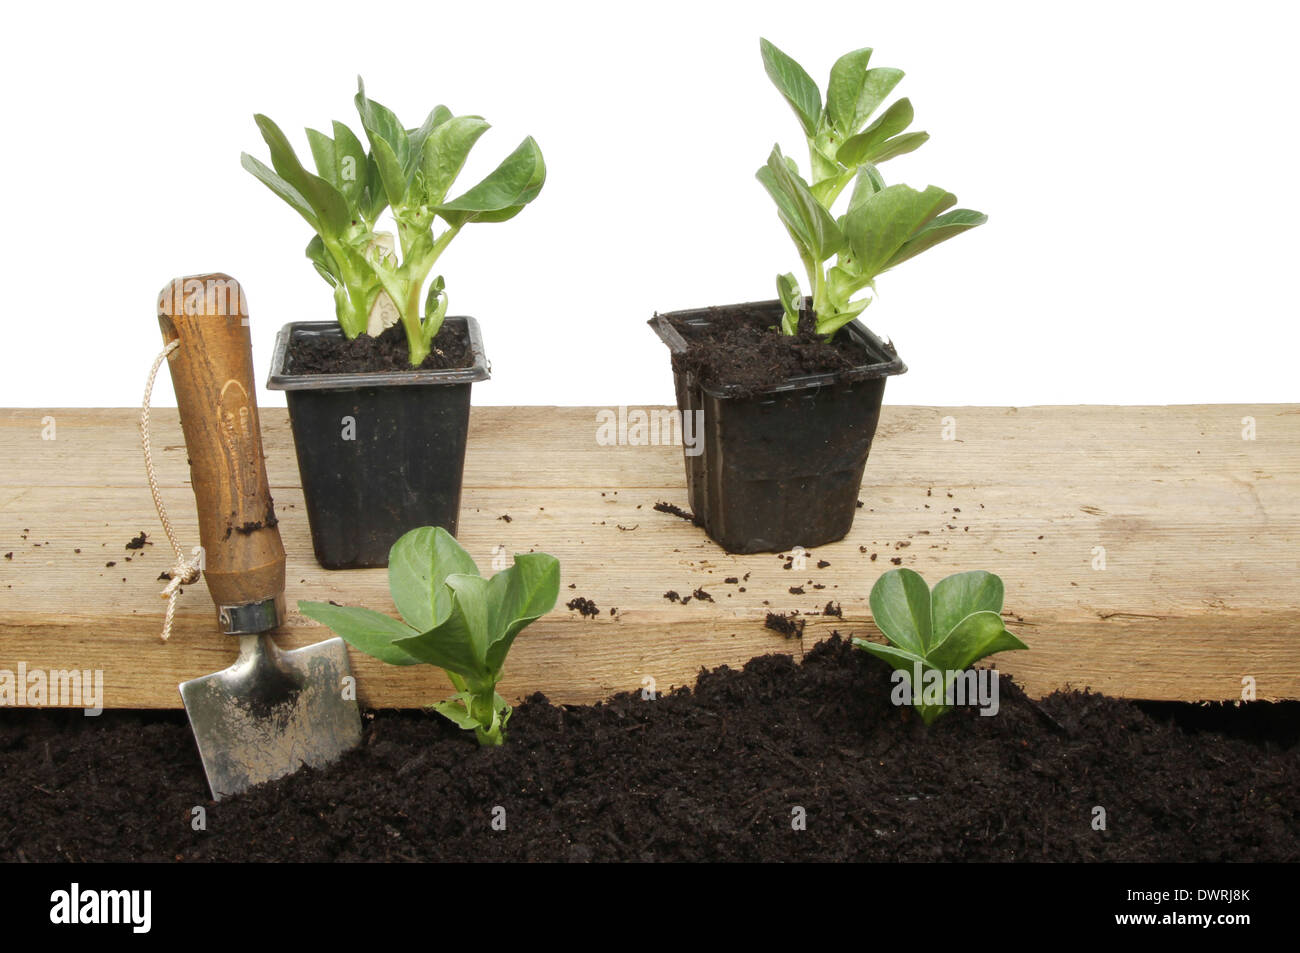 Saubohne Setzling Pflanzen im Boden und auf einem Holzbrett für die Bepflanzung Stockfoto